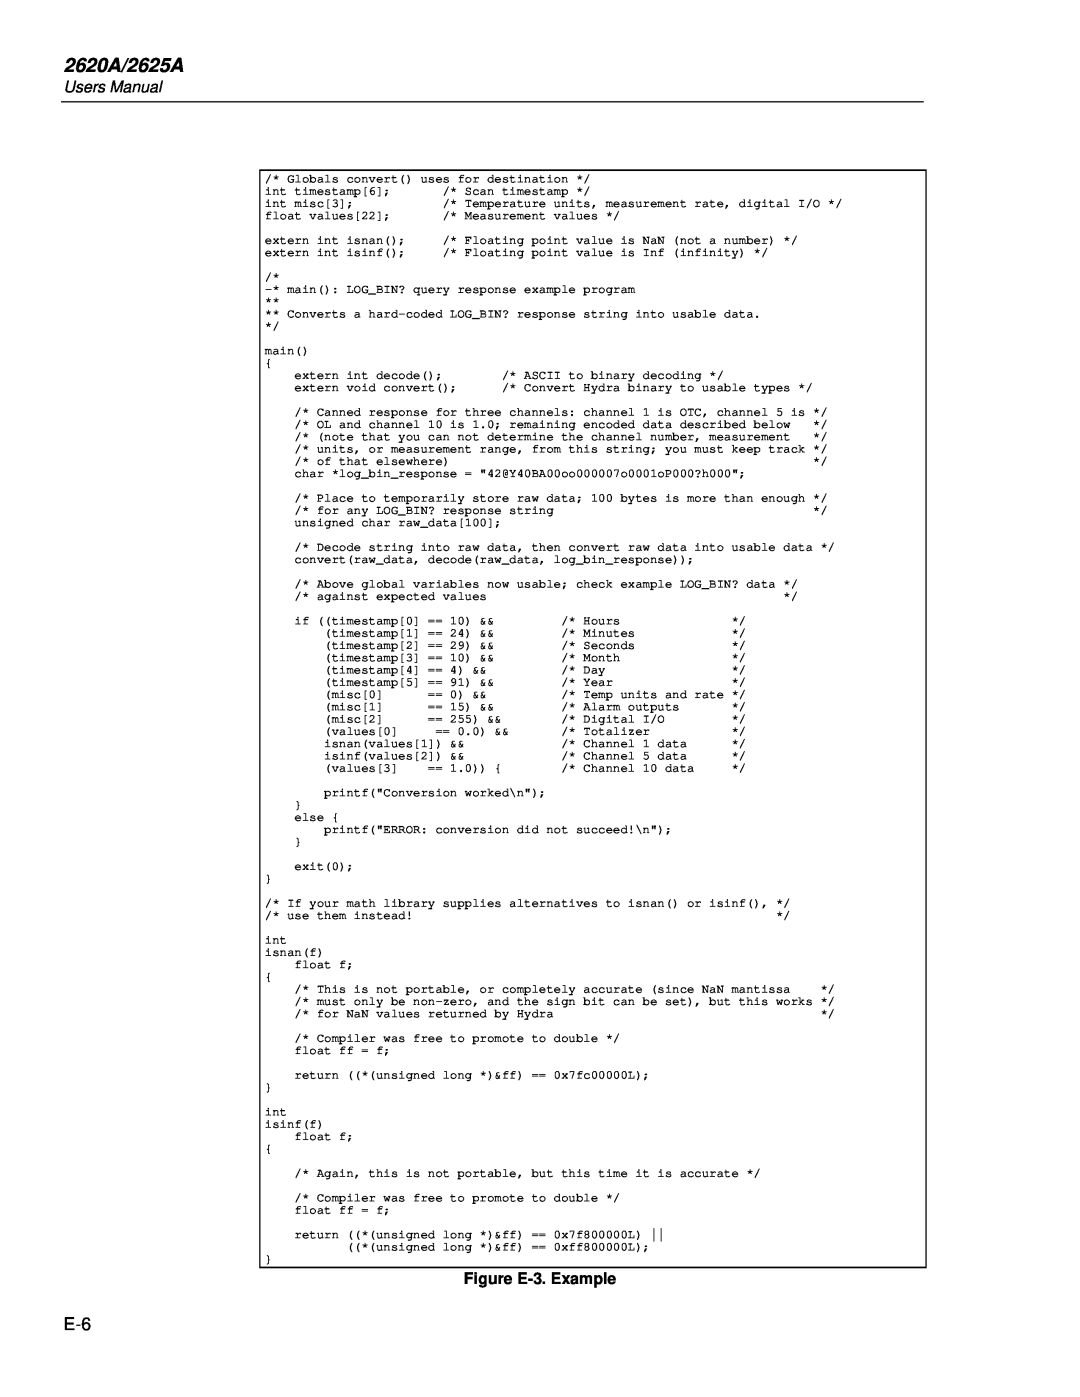 Fluke user manual 2620A/2625A, Figure E-3. Example 